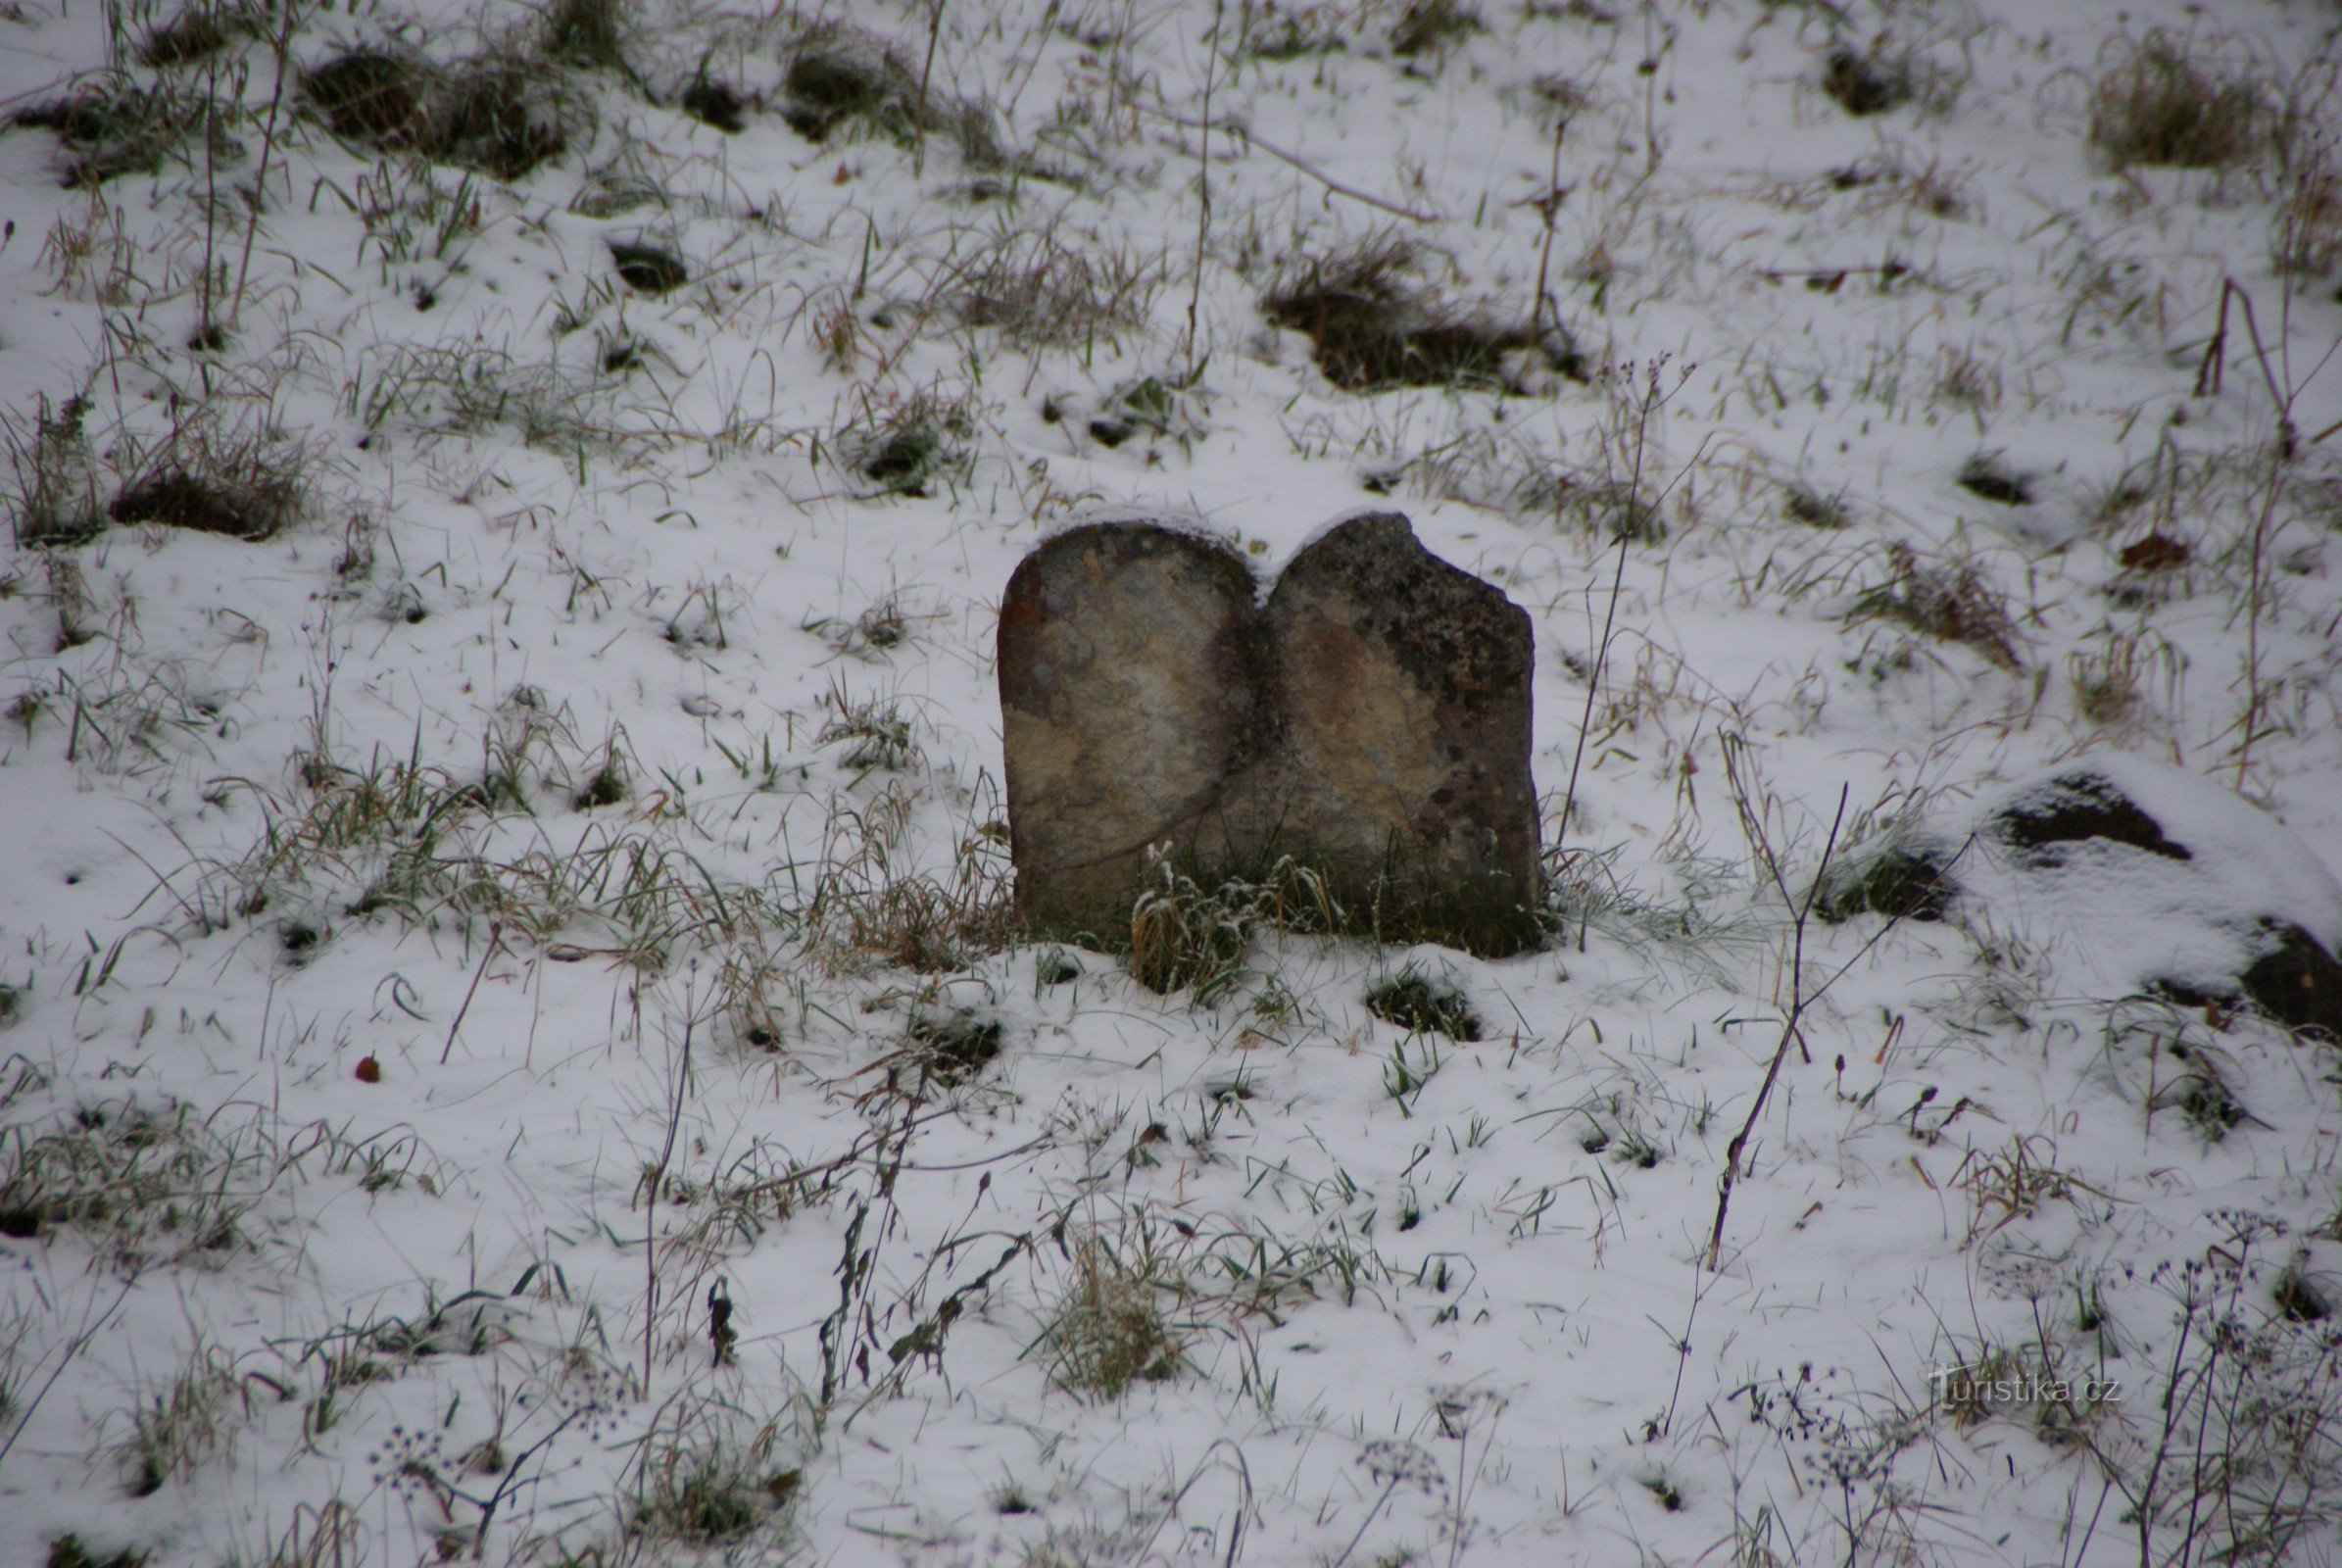 ボスコヴィツェ – 冬のユダヤ人墓地を散策